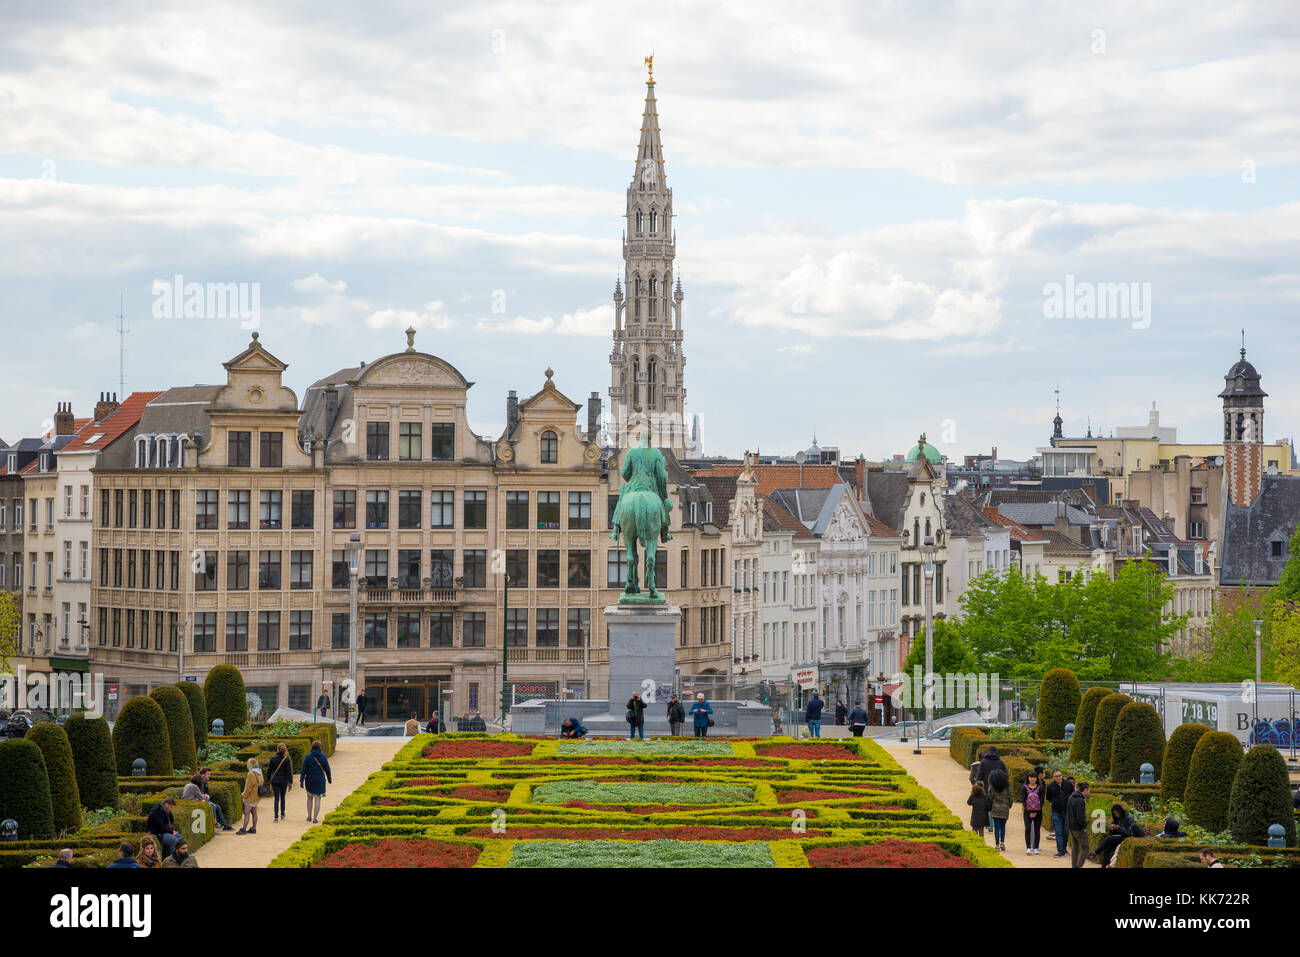 Bruxelles, Belgio - 22 aprile 2017: turisti in scena della città di Bruxelles da kunstberg o mont des arts - monte delle arti con il municipio e equestri Foto Stock